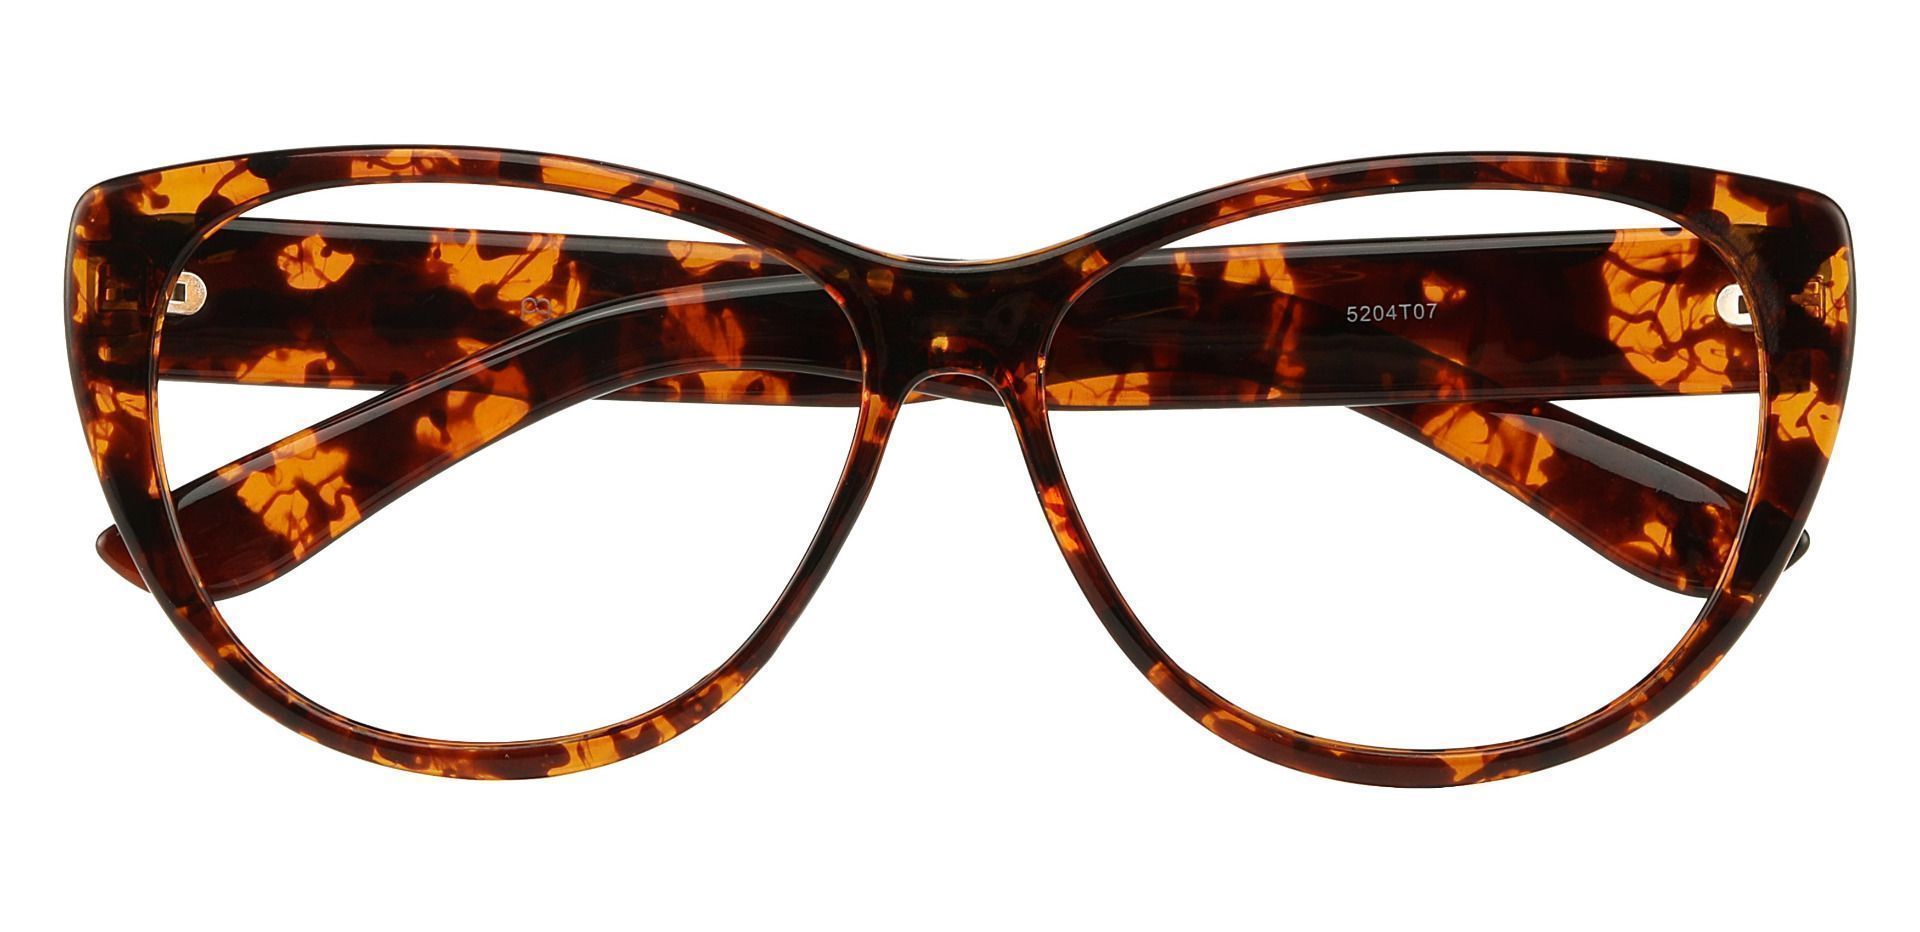 Lynn Cat-Eye Prescription Glasses - Tortoiseshell